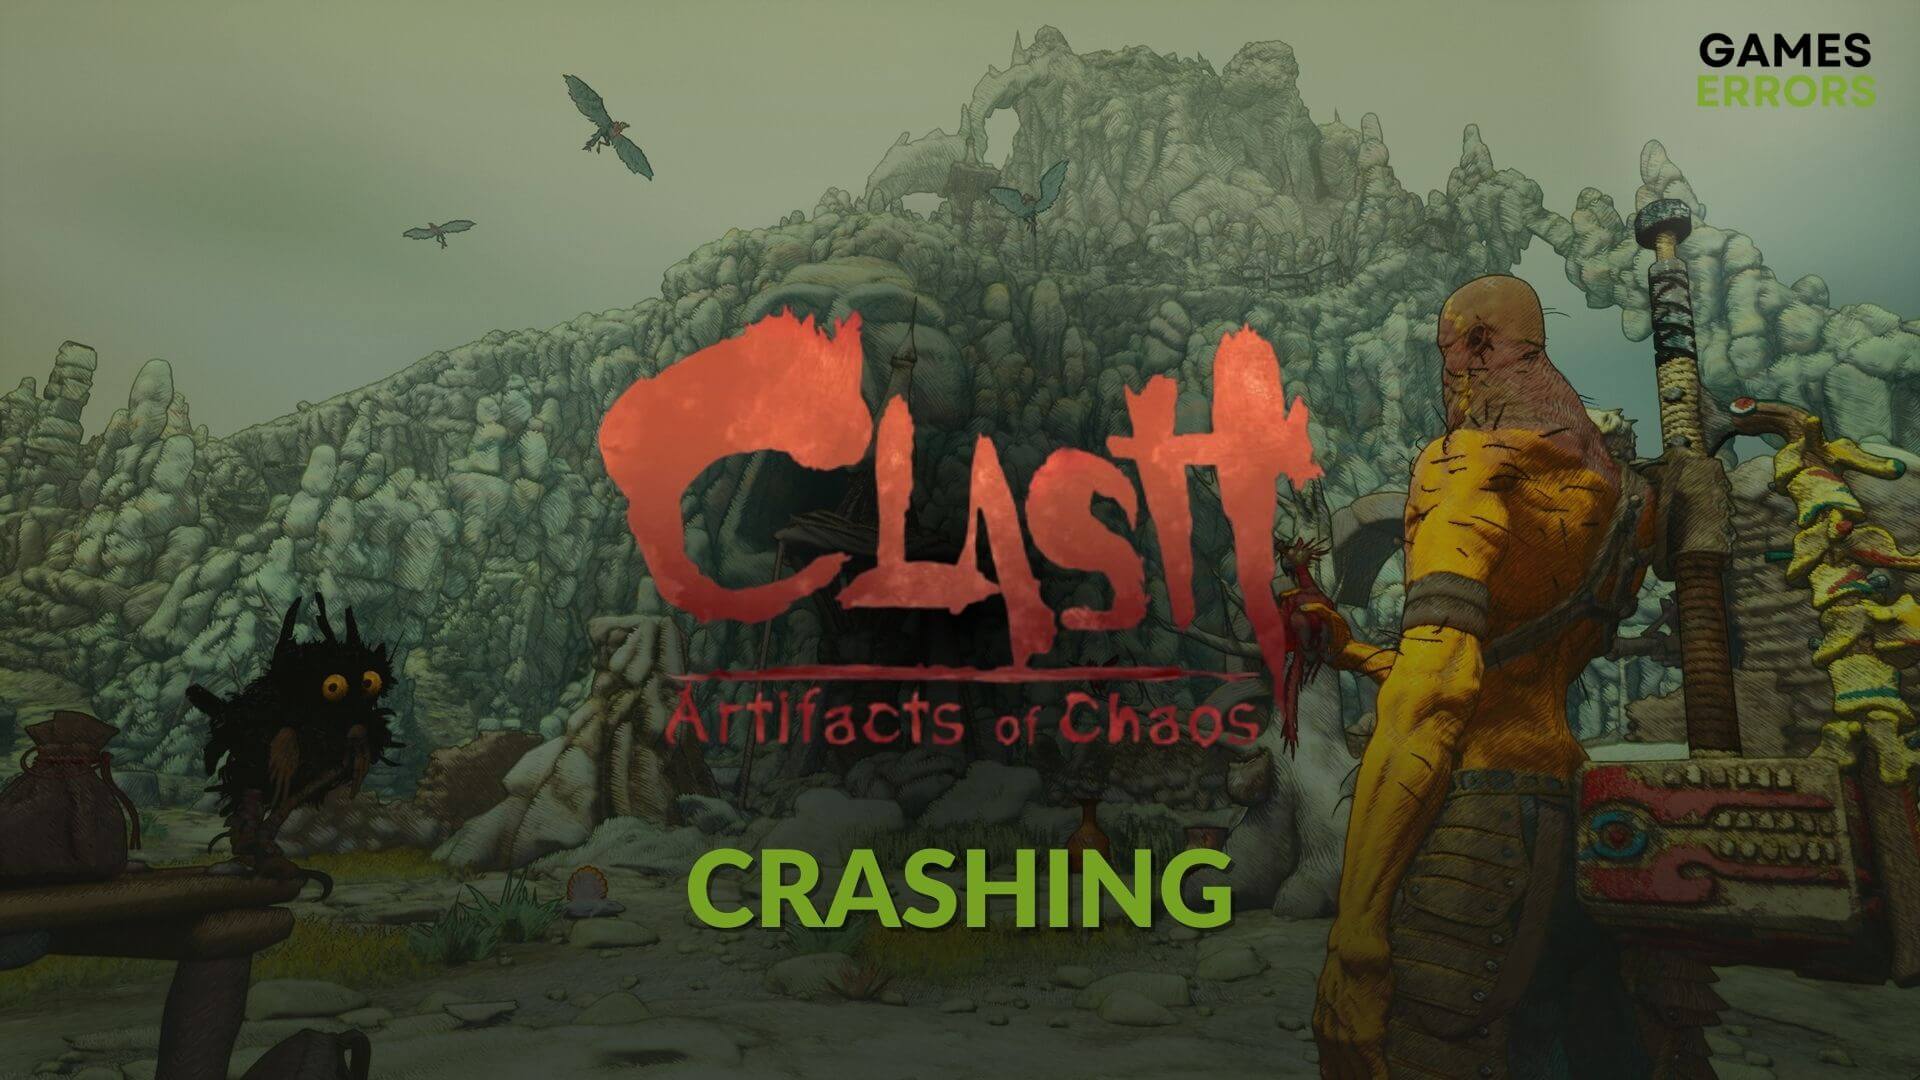 How to fix Clash Artifacts of Chaos crashing